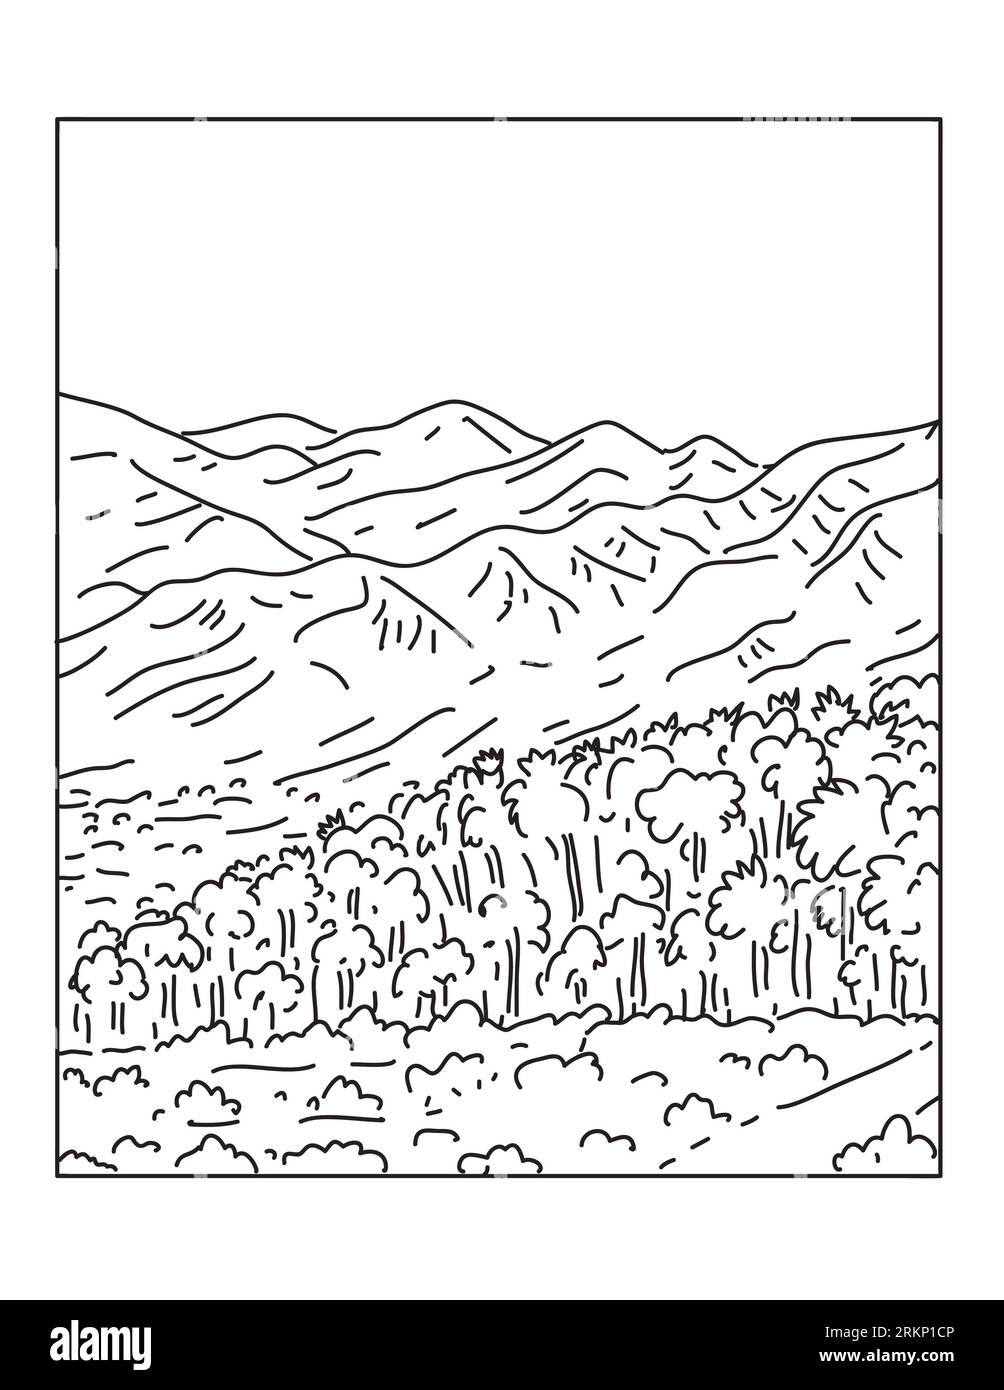 Illustration mono ligne du Monument national de Sand to Snow situé dans le comté de San Bernardino et le nord du comté de Riverside, Californie du Sud fait en M. Banque D'Images